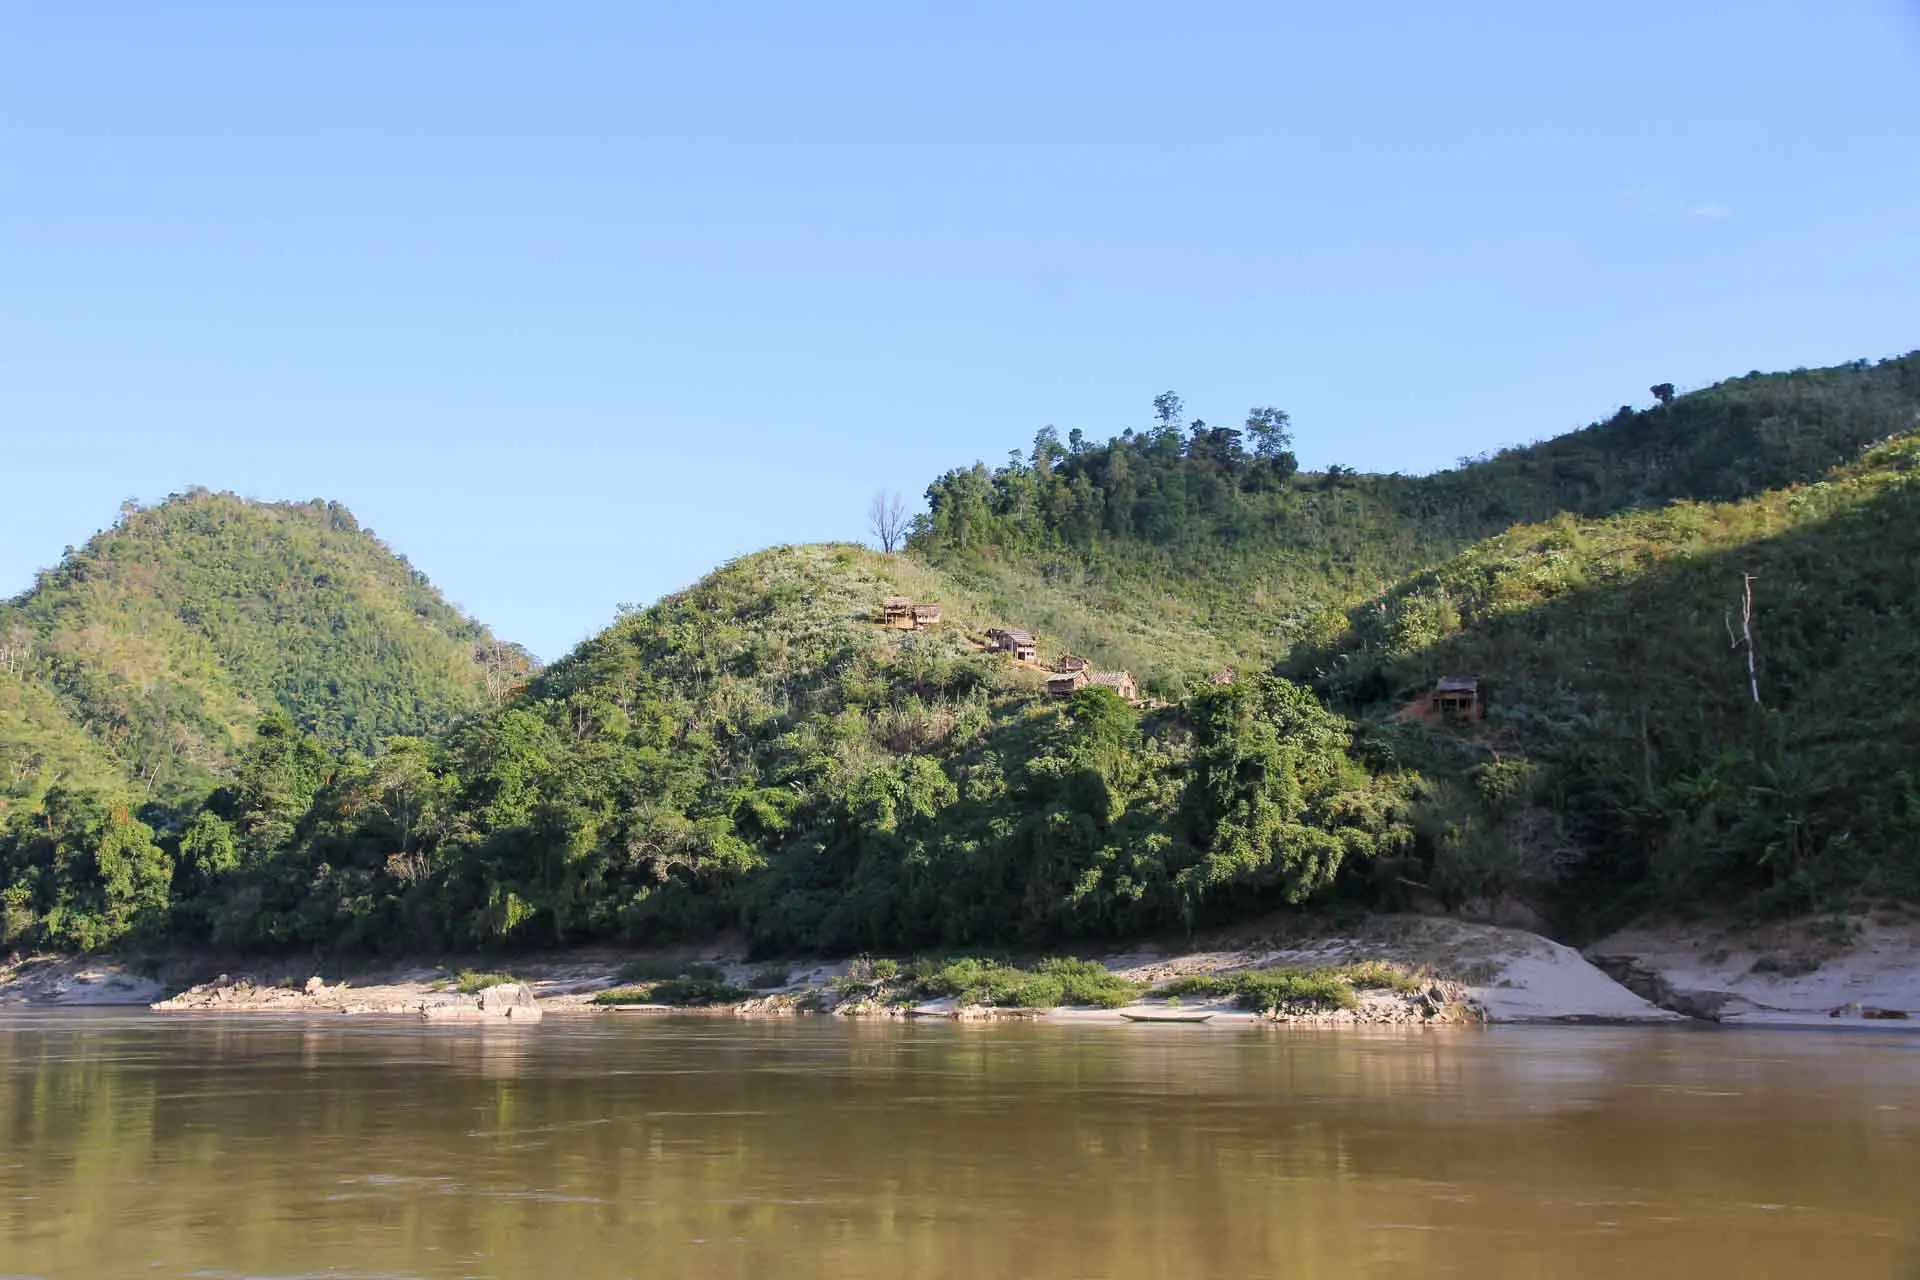 Village on a green hillside along the Mekong River